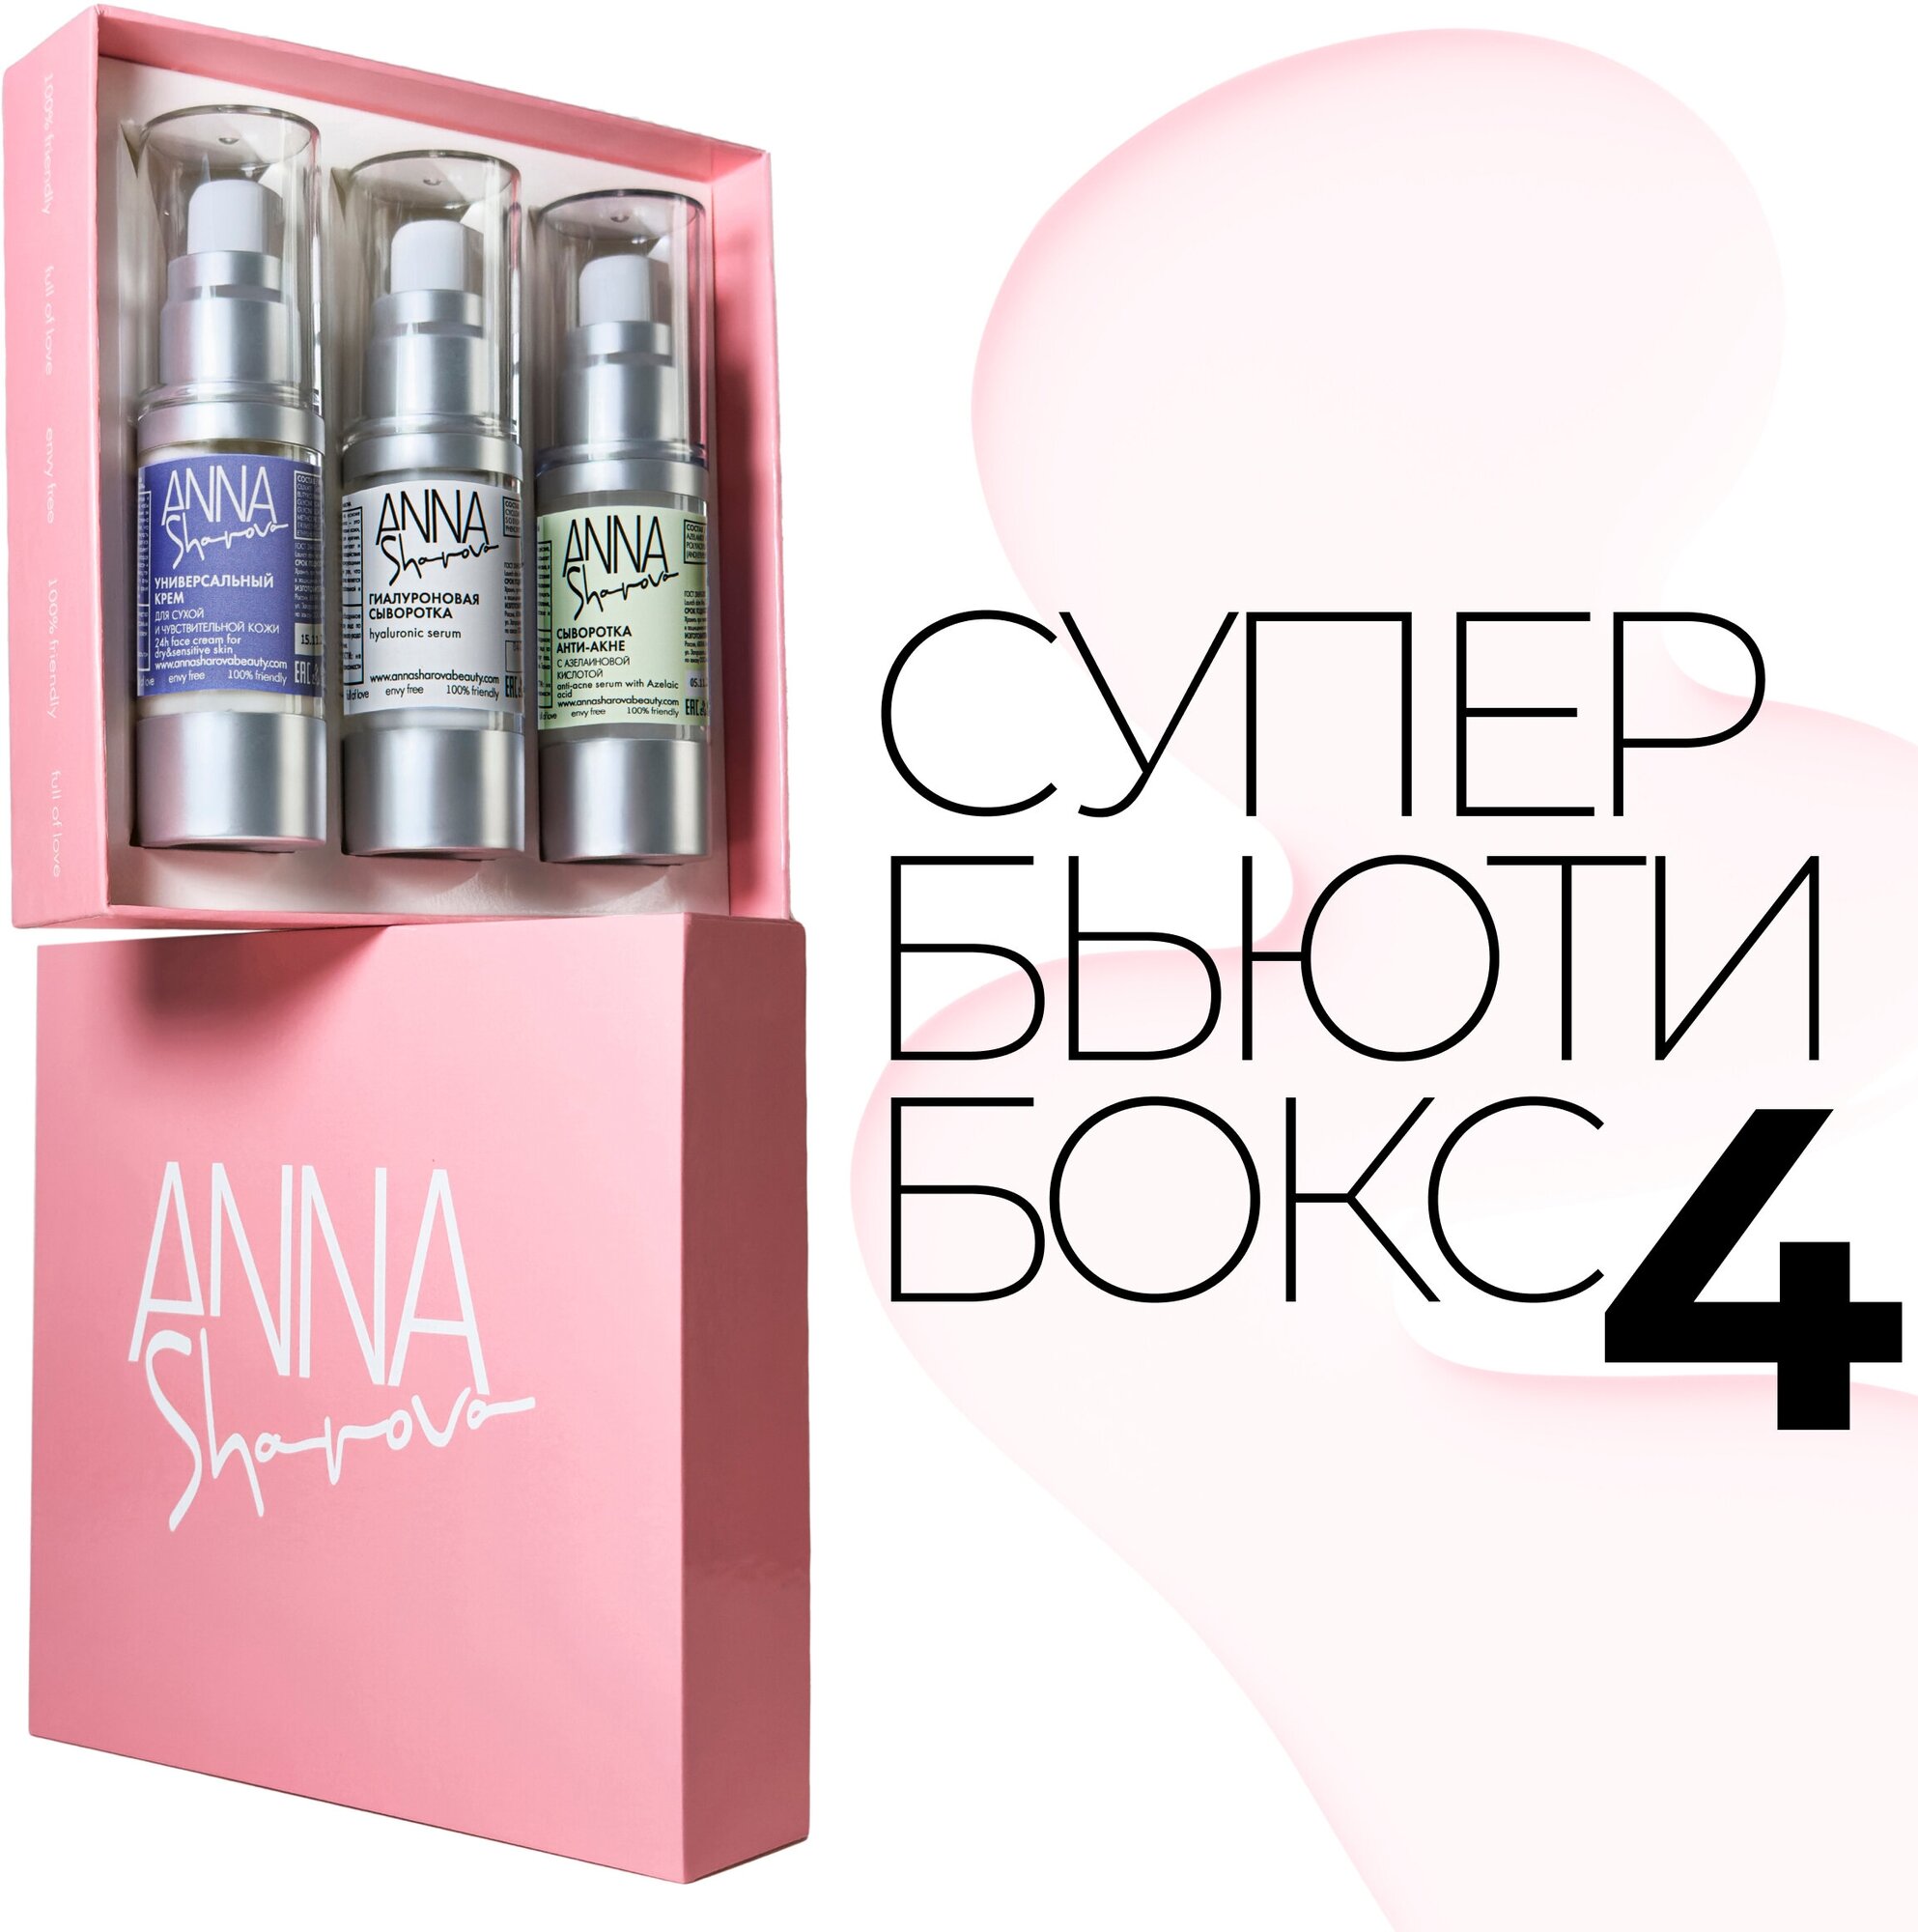 Super Beauty Box 4 ANNA SHAROVA